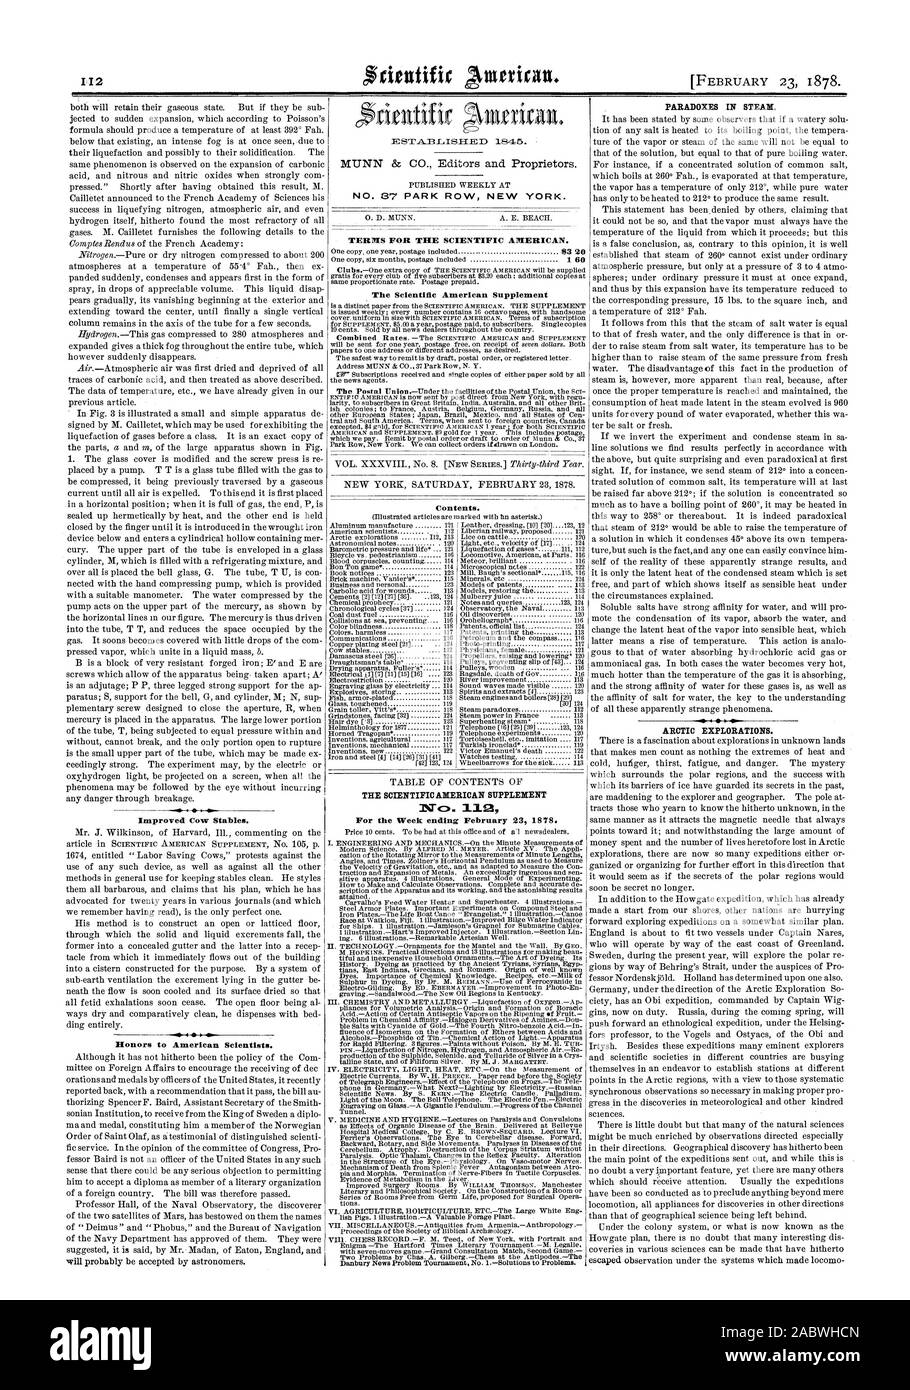 Woche 23. Februar 1878 endet. Verbesserte Kuh Stall. Paradoxien in Dampf. Arktis Erkundungen., Scientific American, 1878-02-23 Stockfoto